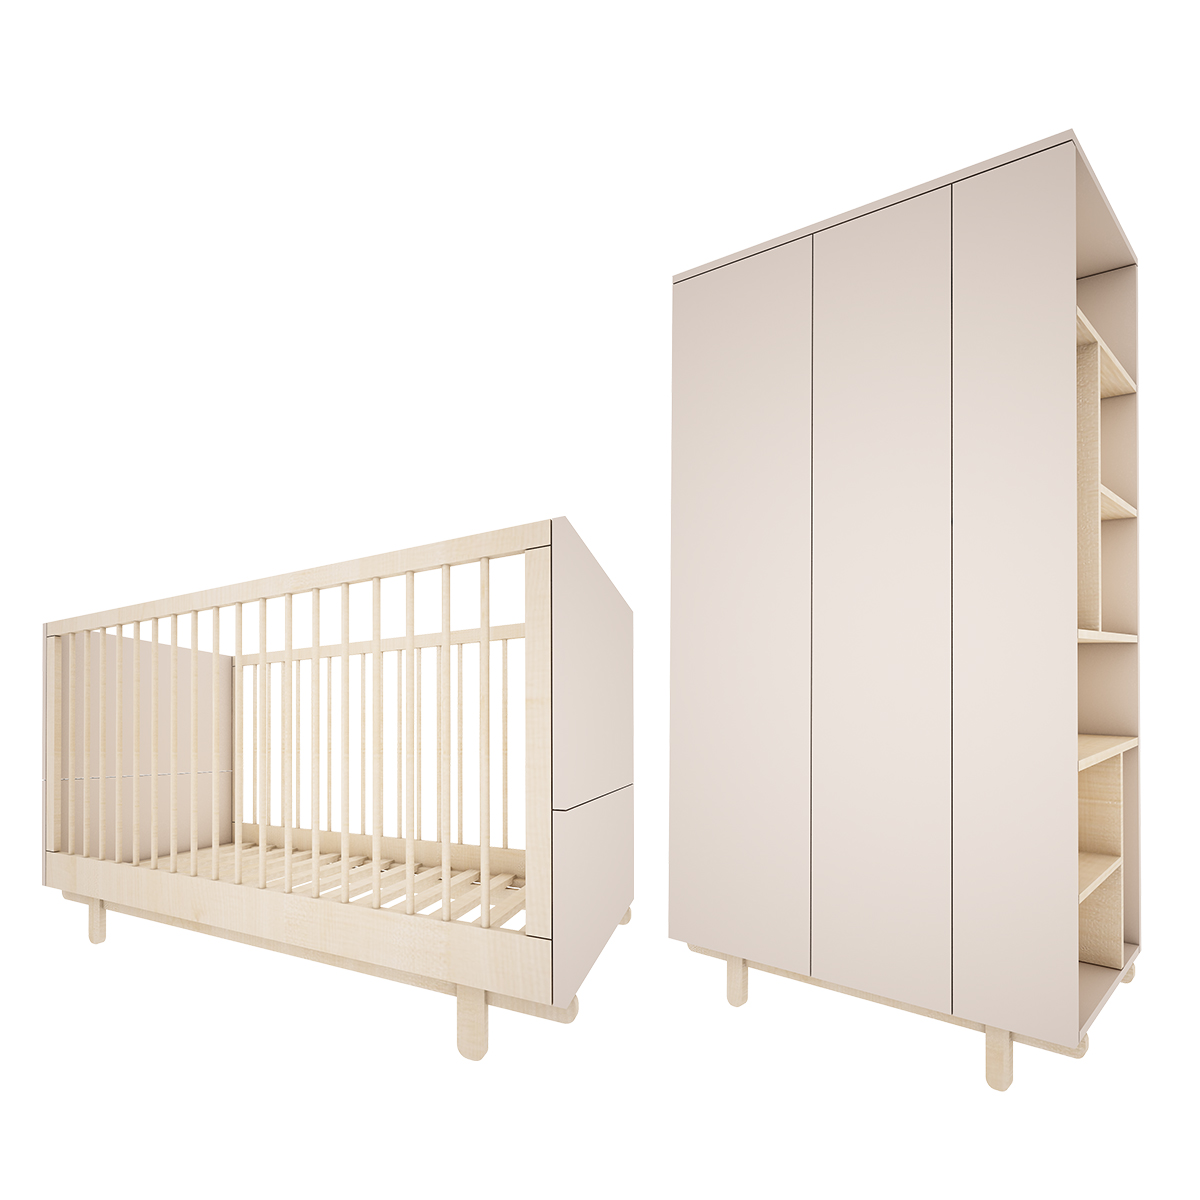 Chambre bébé : Duo - Lit évolutif 70x140 armoire 2 portes beige